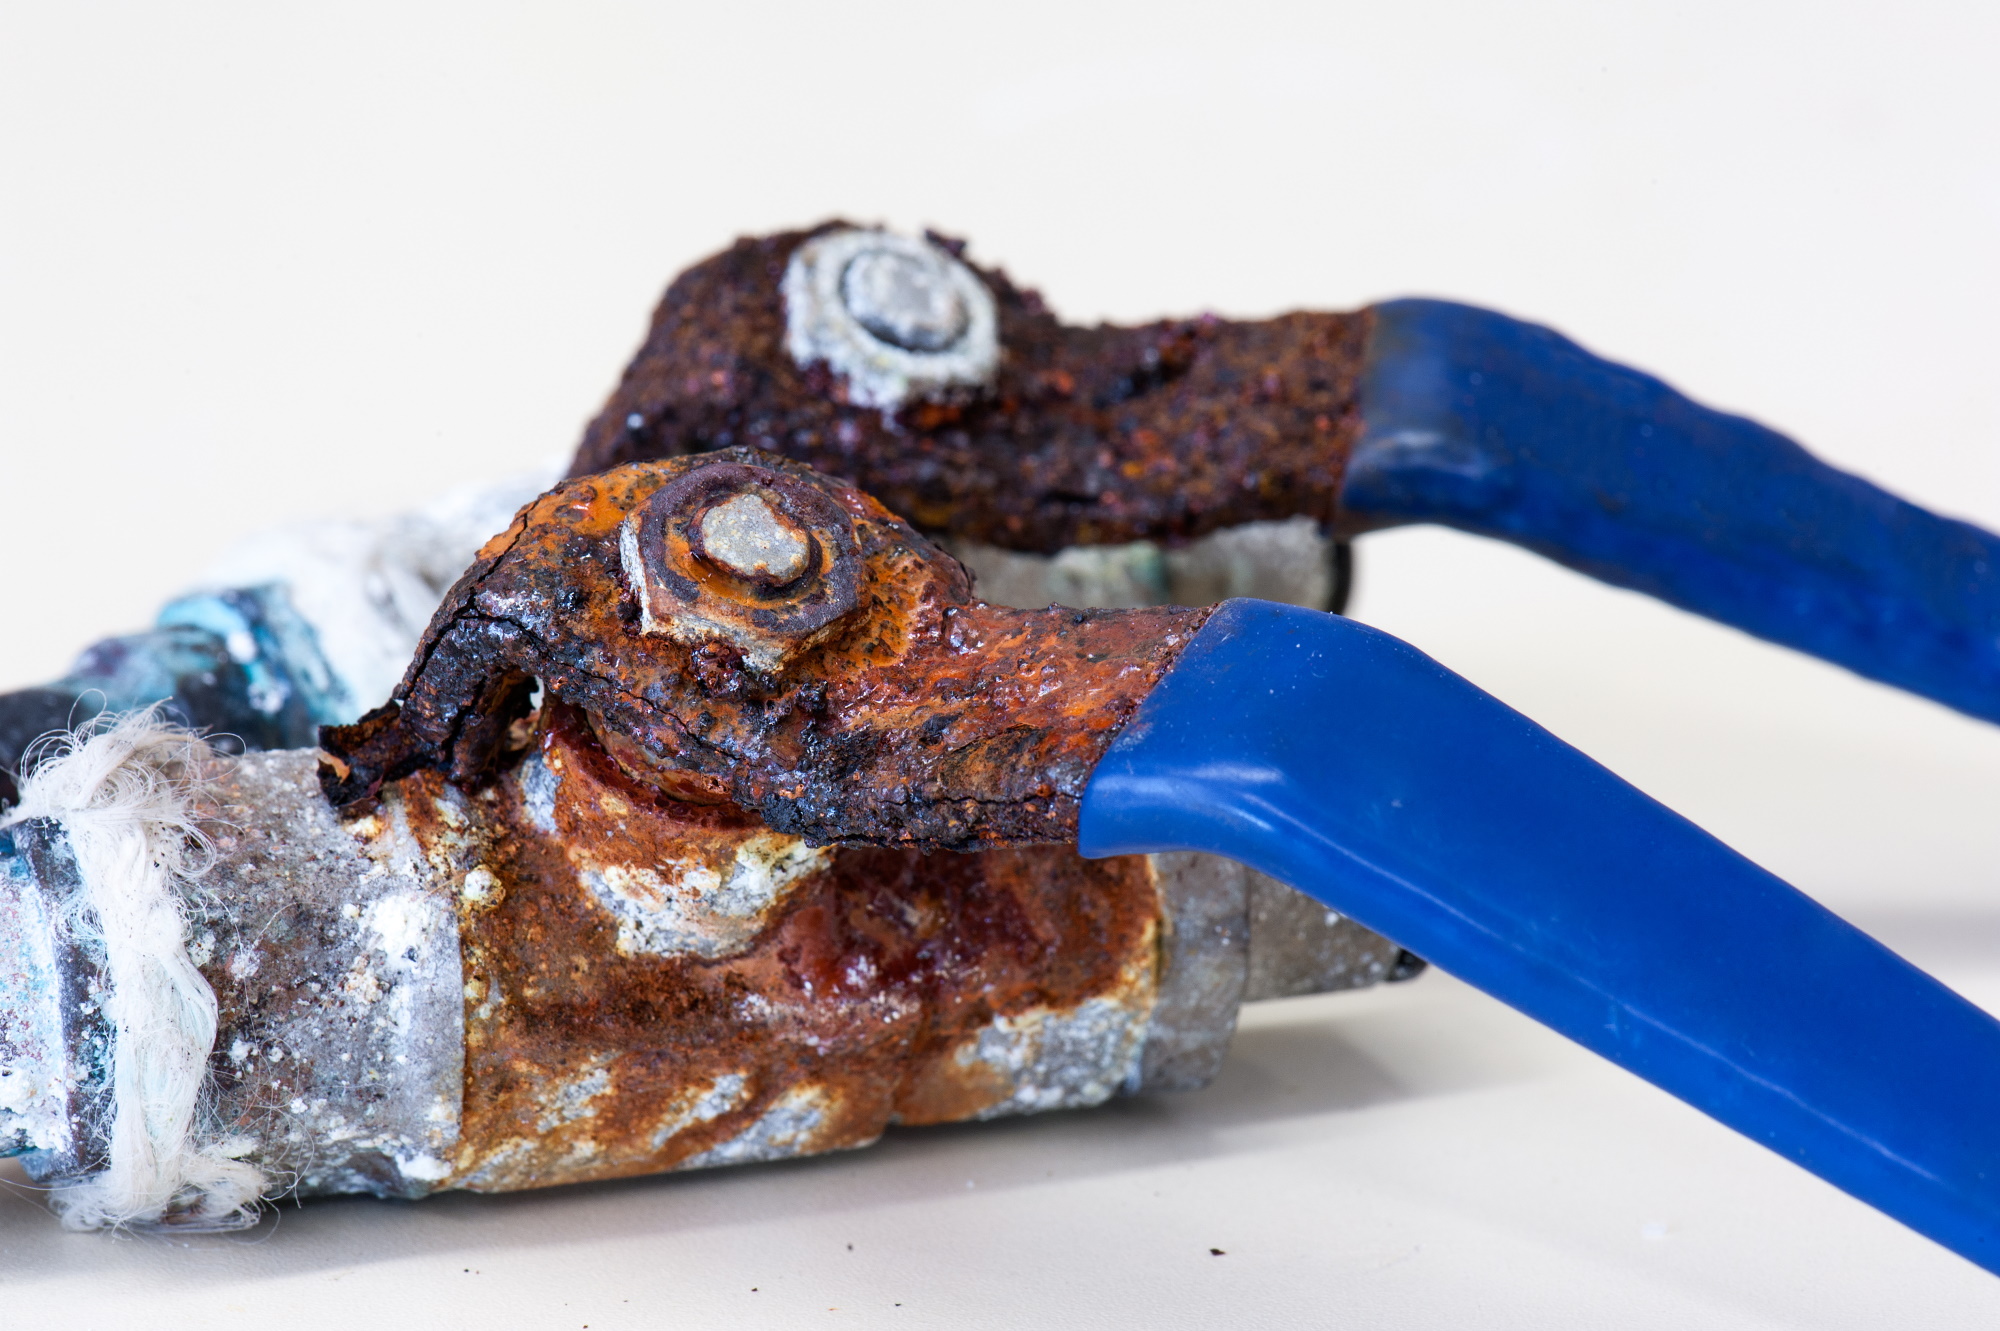 Herramienta metálica oxidada por la corrosión de su recubrimiento